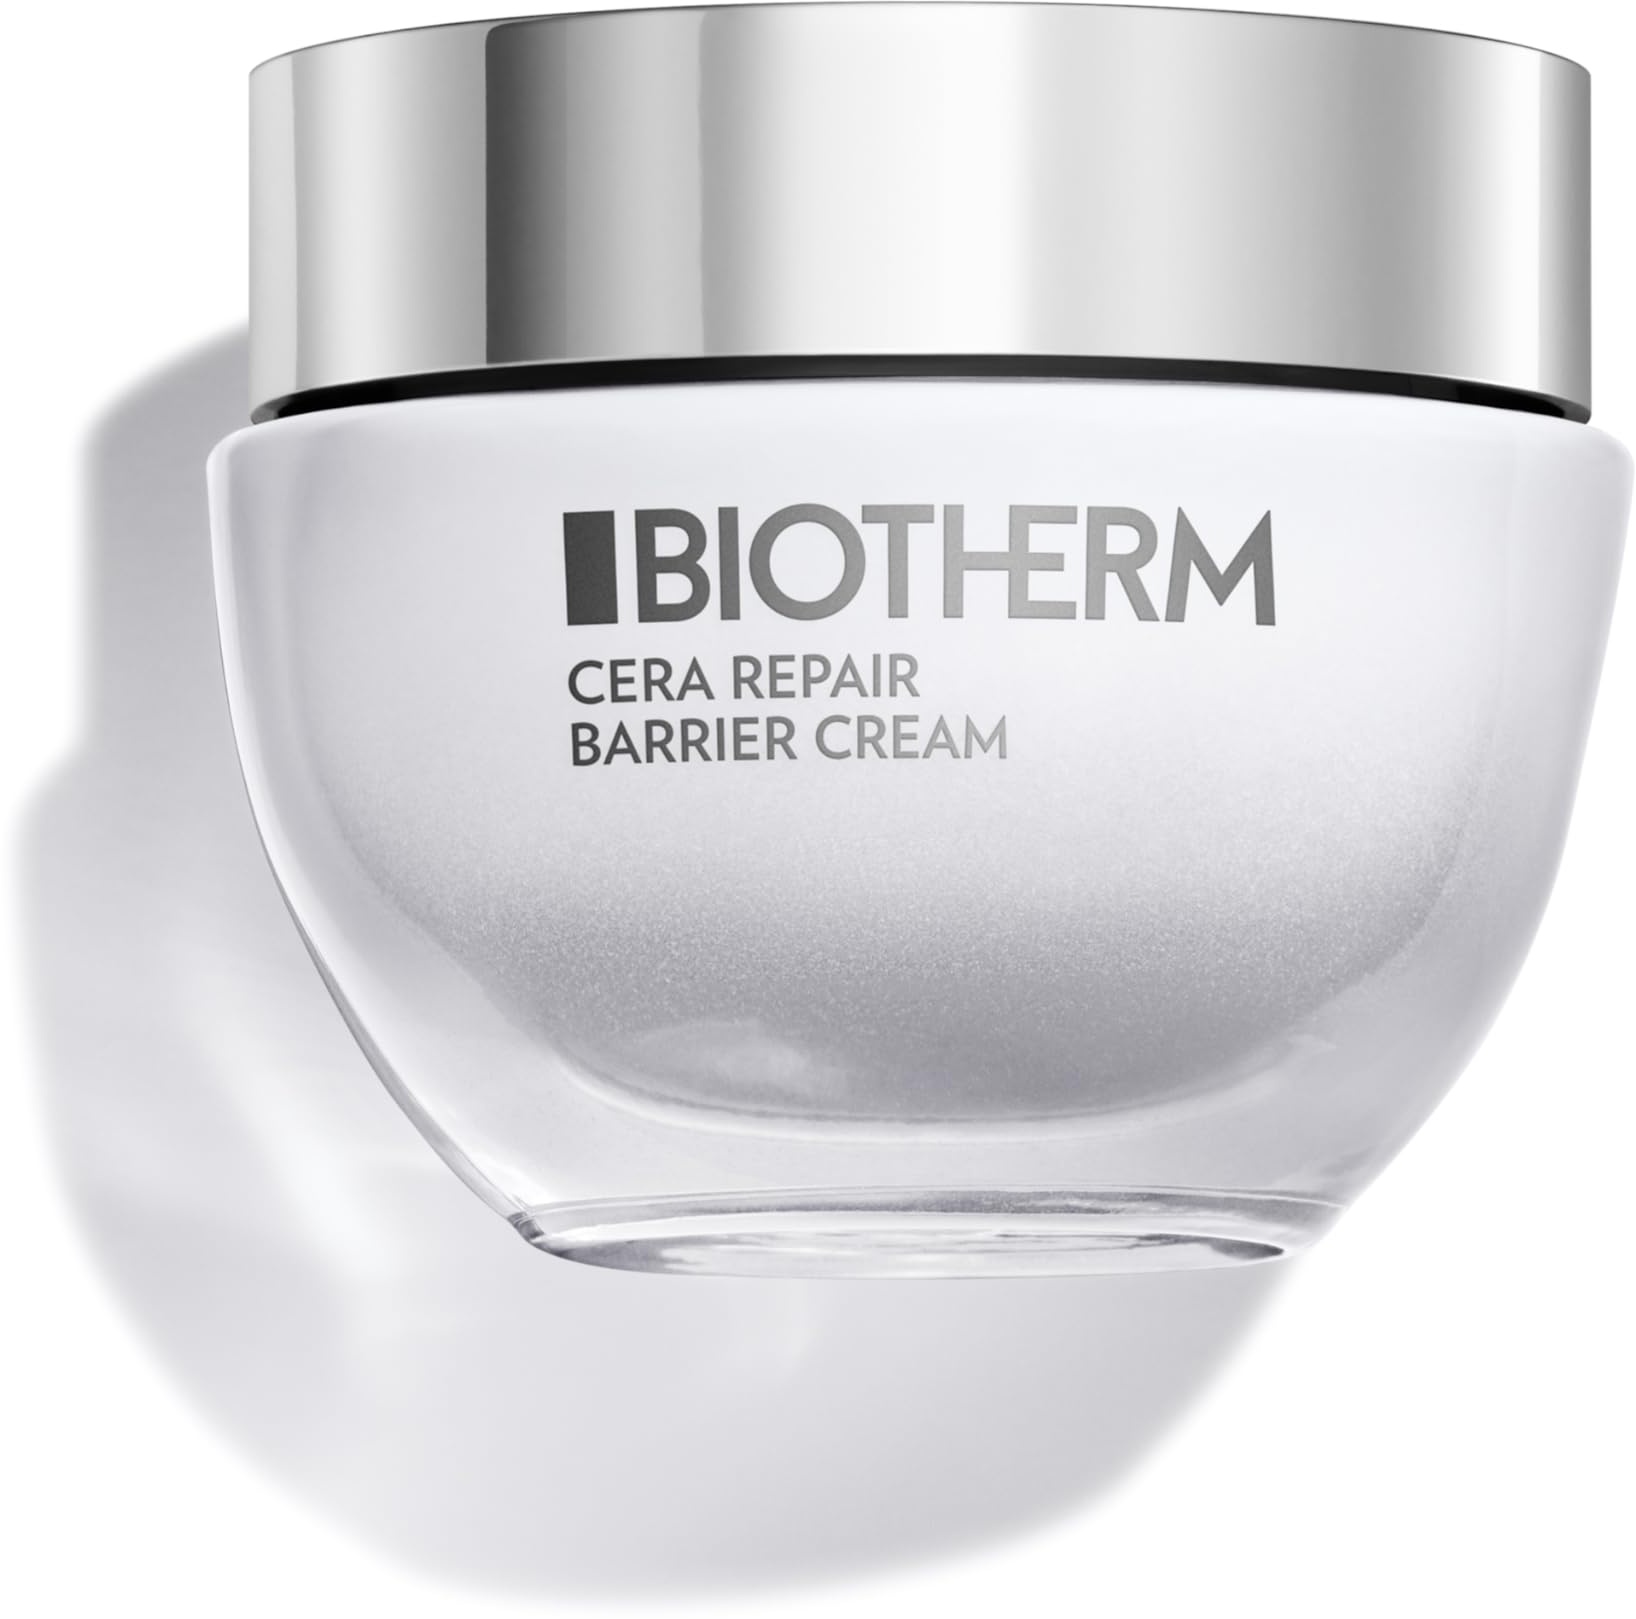 Biotherm Cera Repair Barrier Cream, mit Life Plankton und Bio-Ceramiden, nährende Gesichtscreme für strahlende Haut, pflegende Creme für Damen, 50 ml